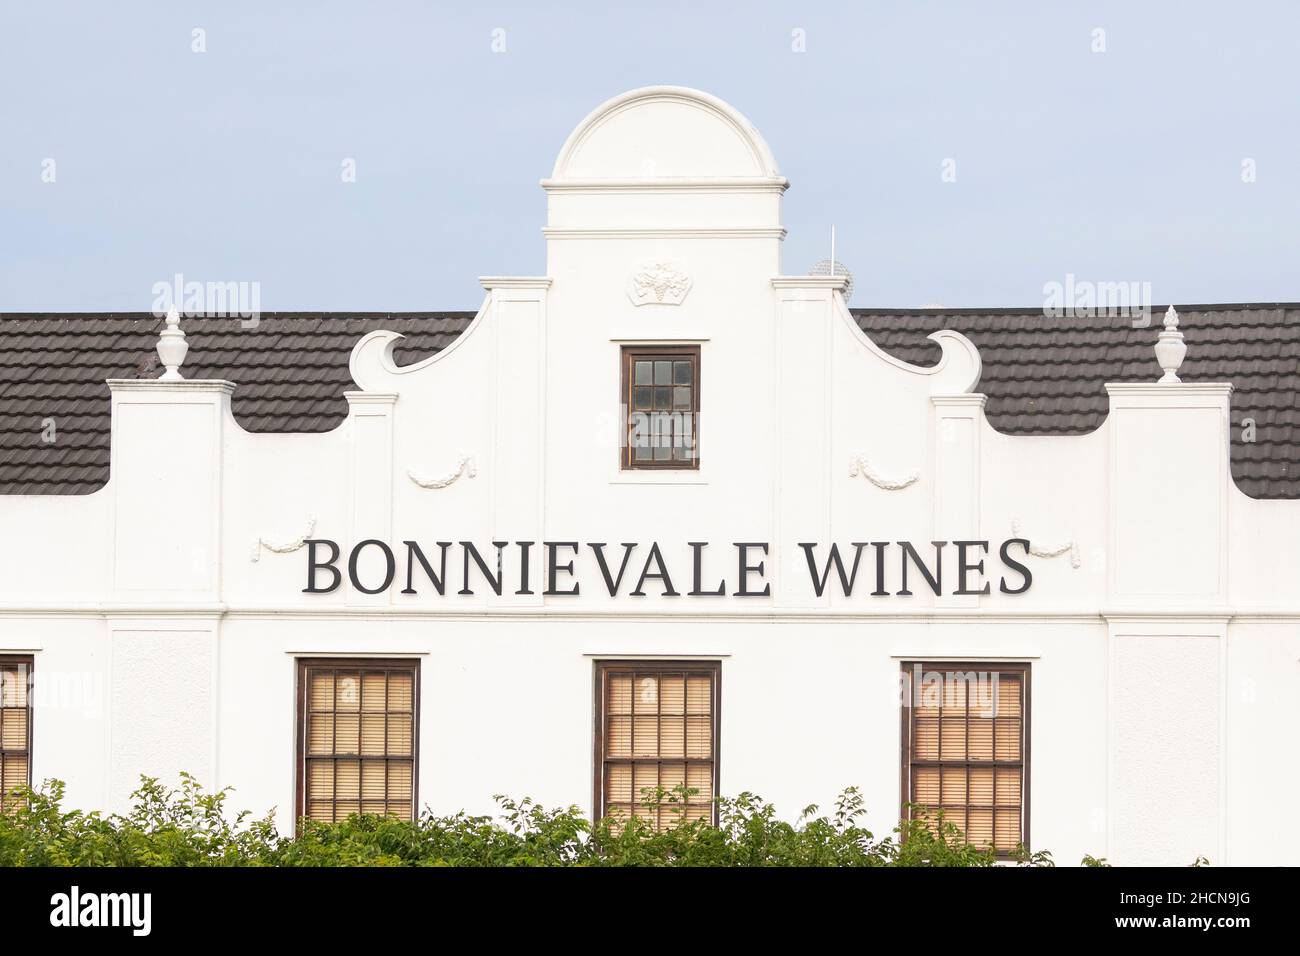 Façade extérieure des caves à vins Bonnievale et lieu de dégustation de vins, Robertson Wine Valley, Western Cape Winelands, Afrique du Sud Banque D'Images